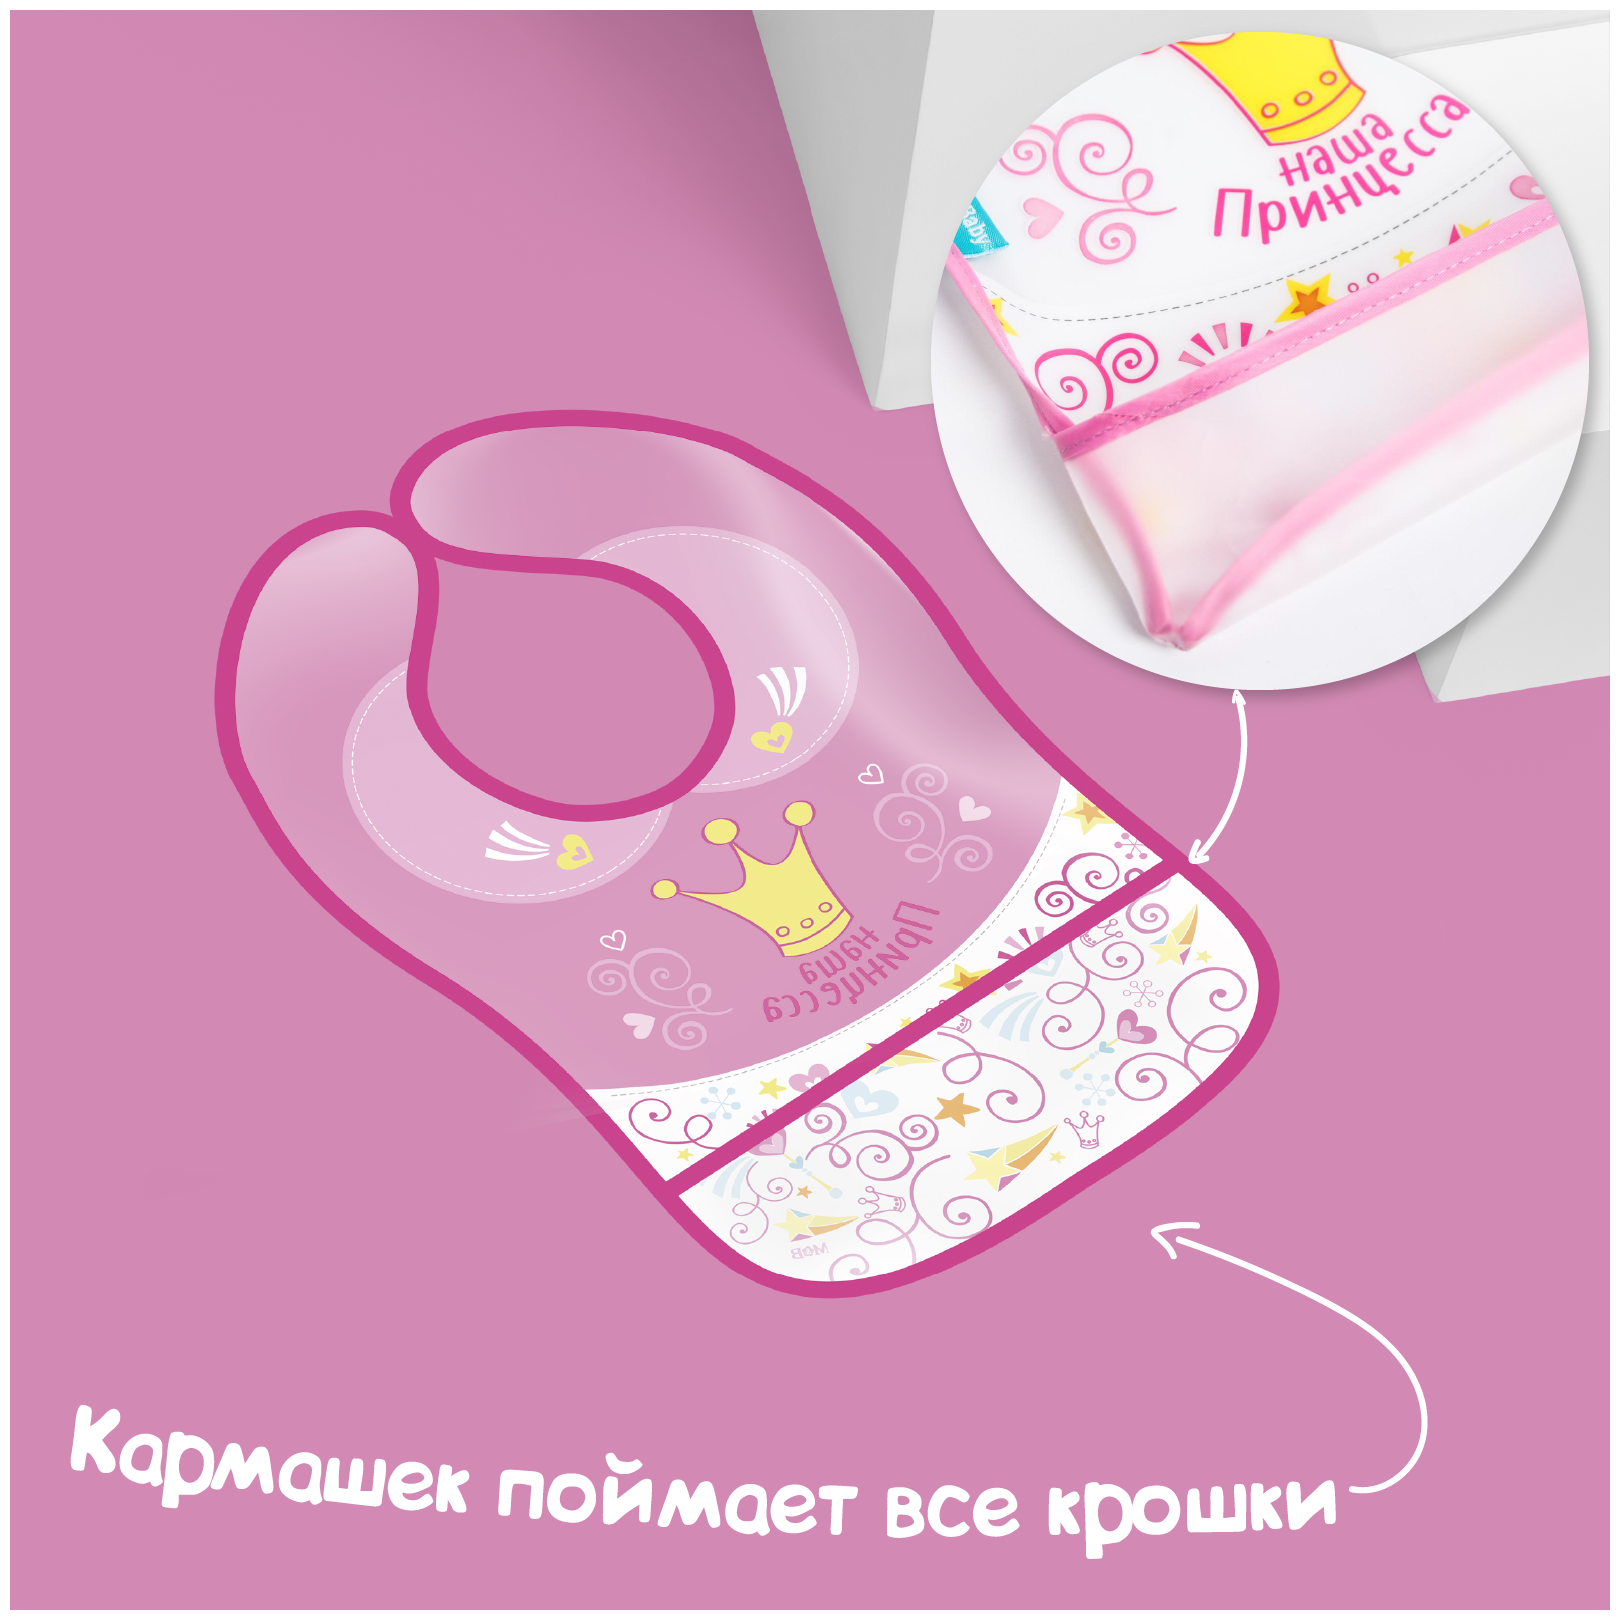 Нагрудник непромокаемый "Наша принцесса", на липучке, регулируемый размер, от 4 месяцев, цвет розовый, ПВХ